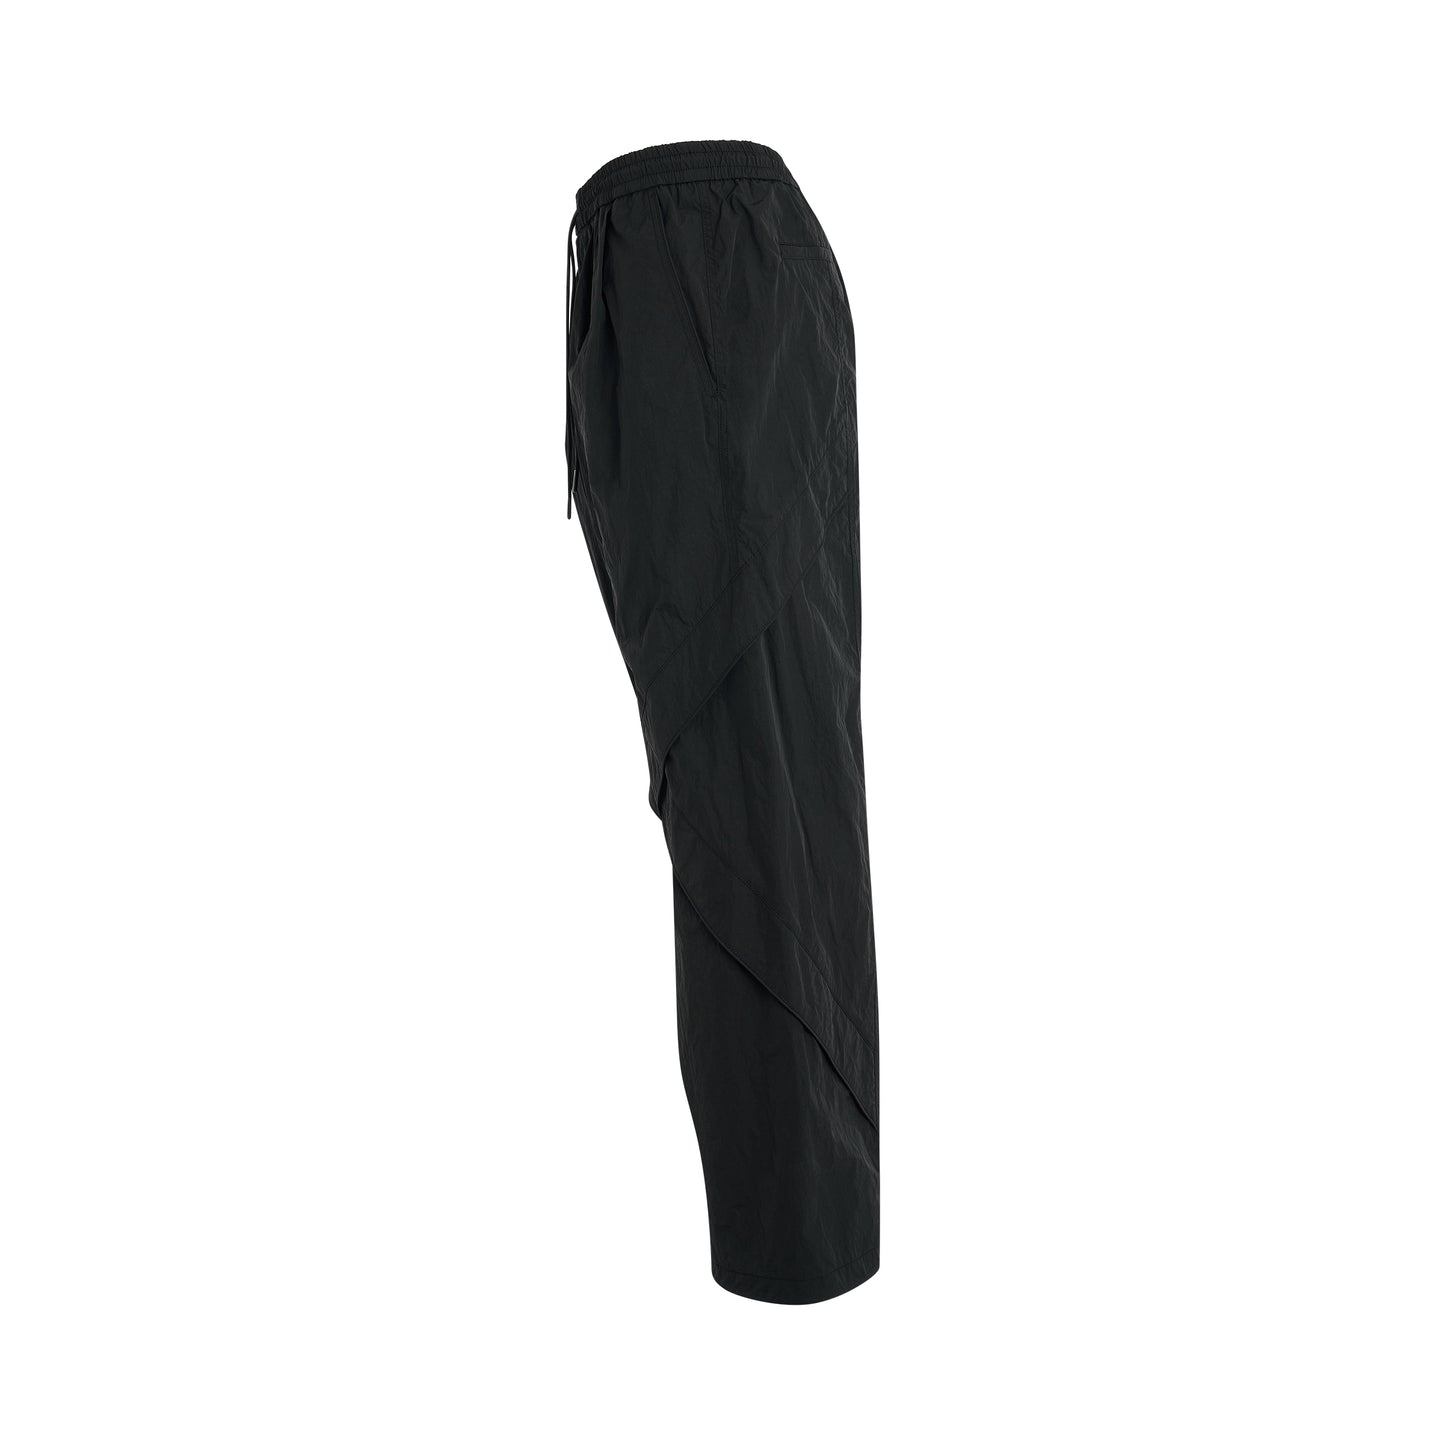 Nylon Piped Pants in Black